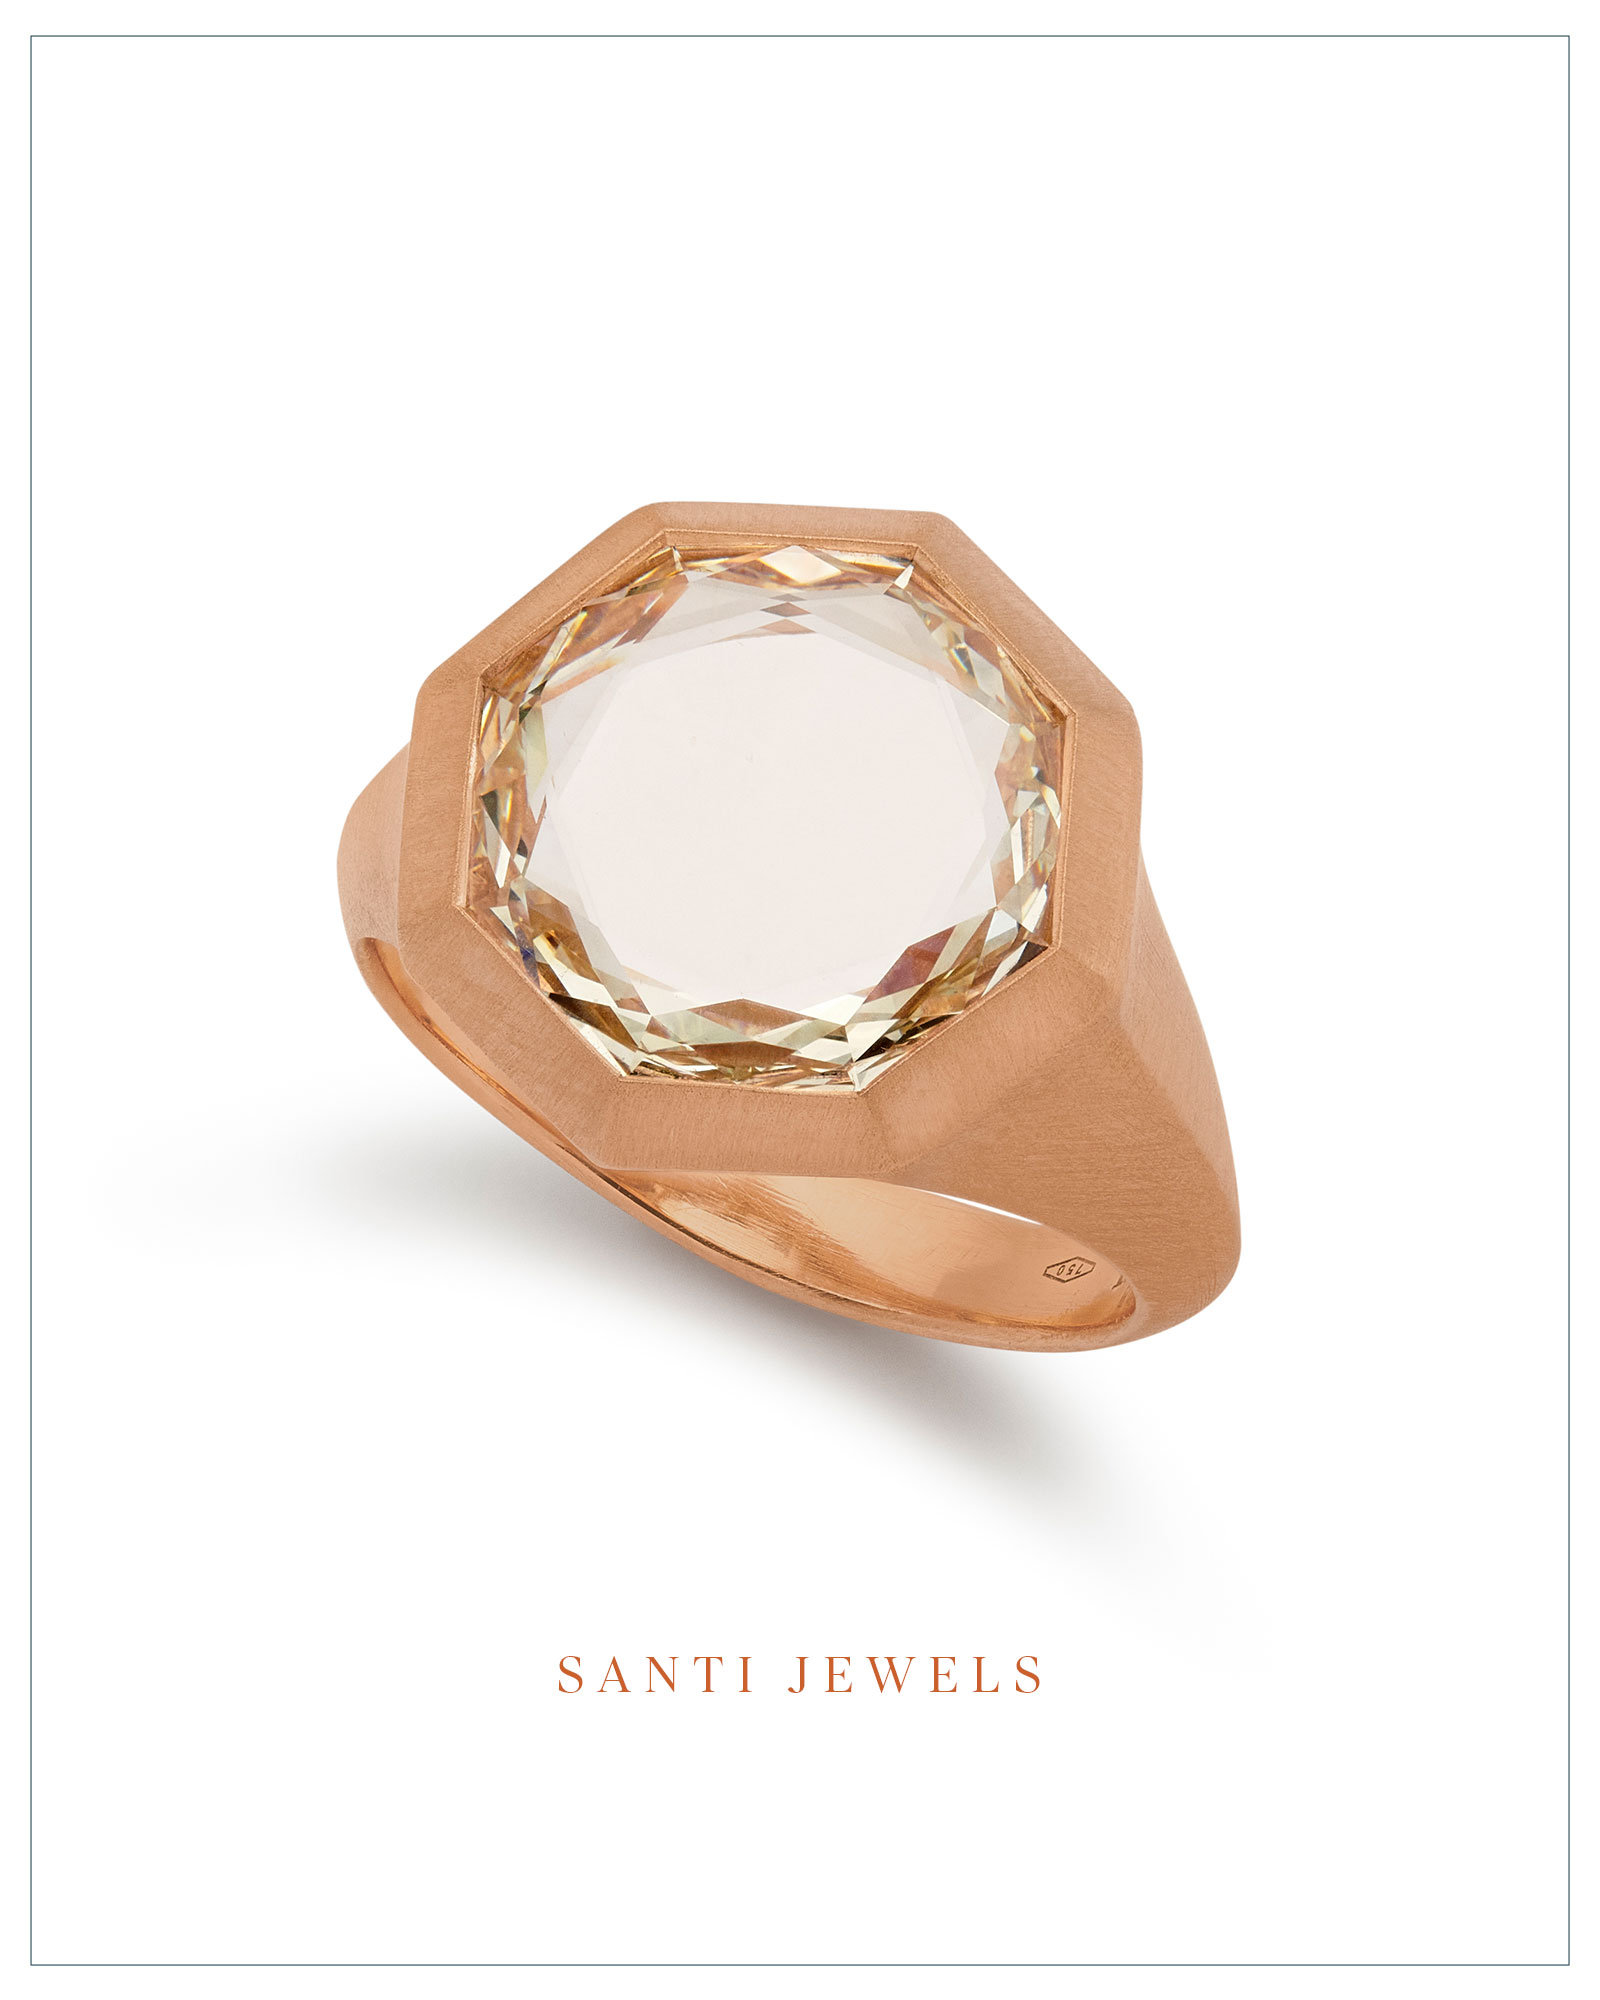 Santi Jewels octagonal portrait-cut diamond ring